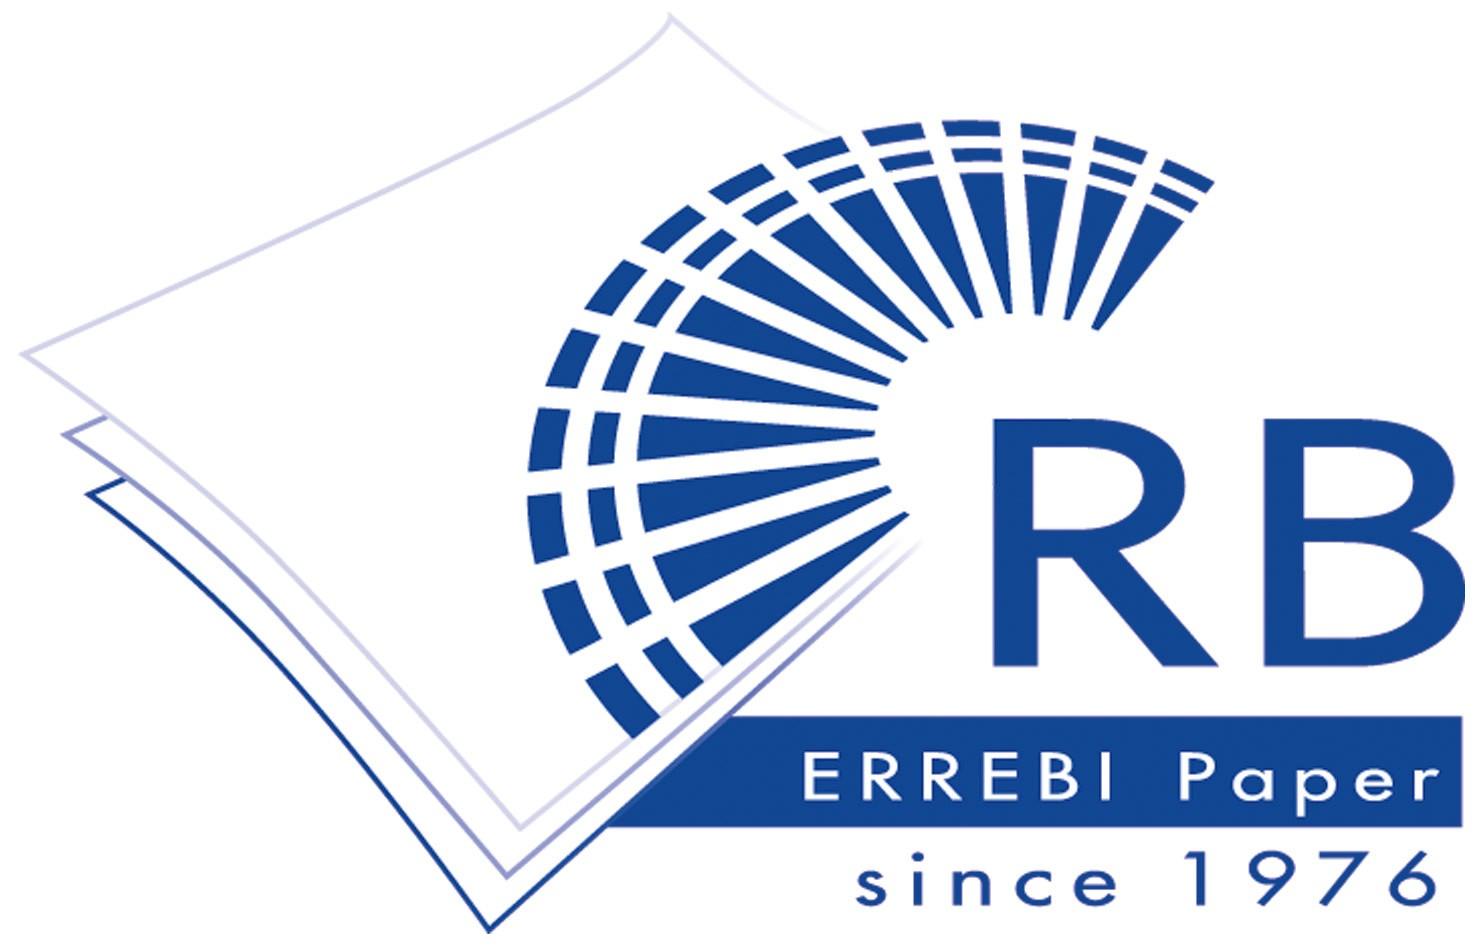 Errebi Paper Srl: Přední jméno v inovativní výrobě papírových produktů